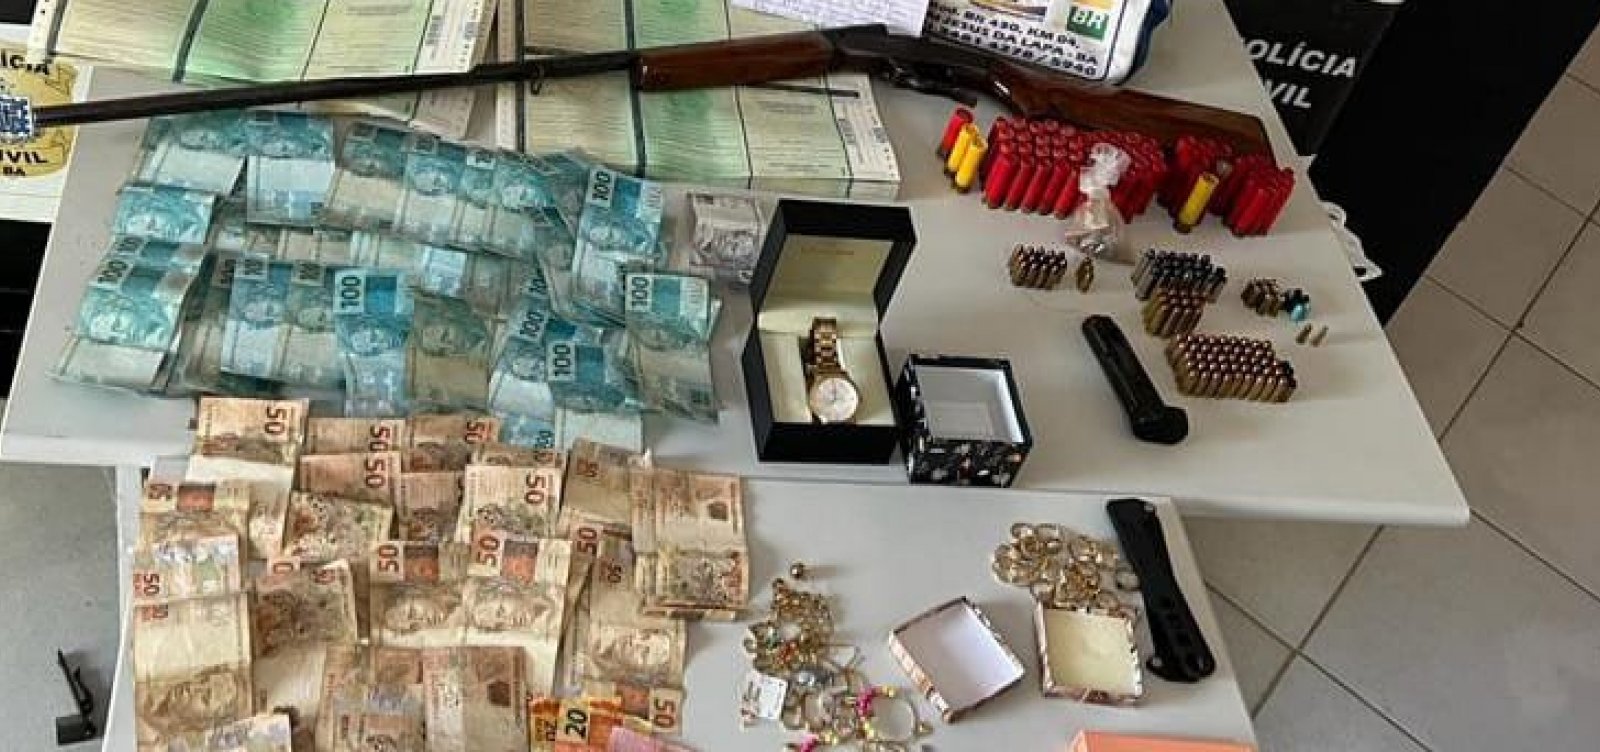 Suspeito de comandar crime, sargento da PM é preso por roubo R$ 820 mil em joias e celulares no oeste da Bahia